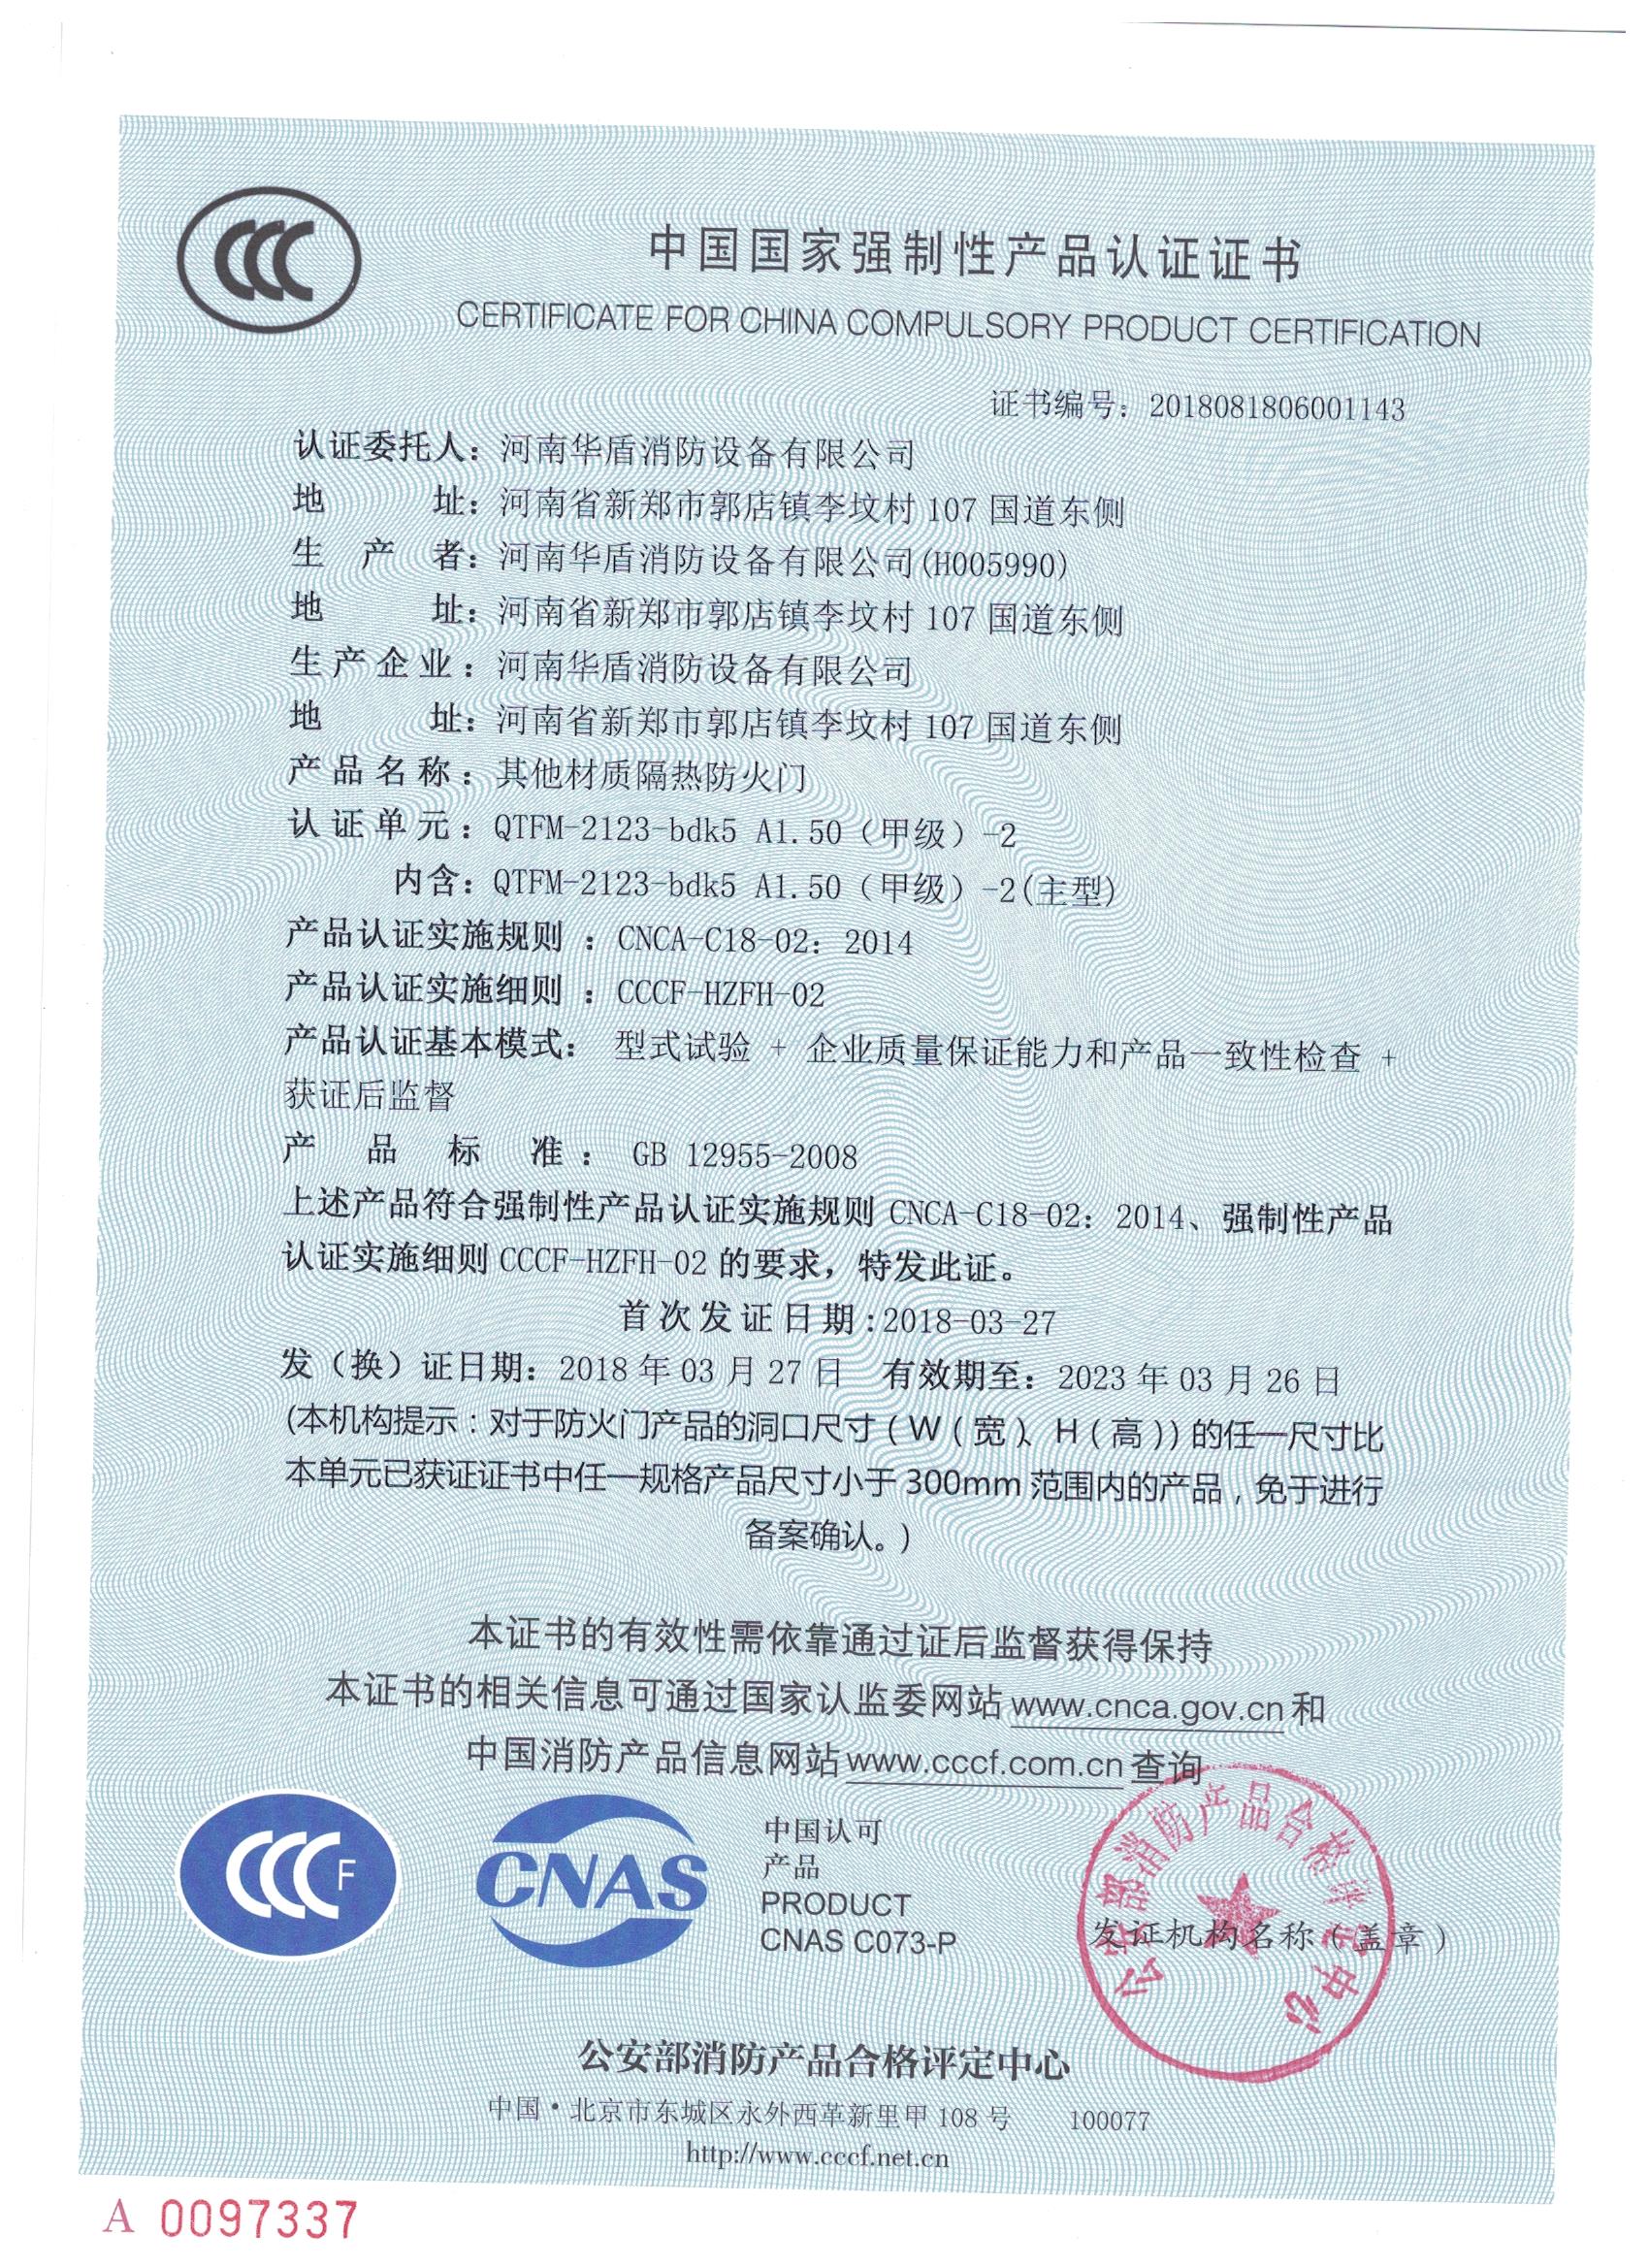 郑州QTFM-2123-bdk5A1.50(甲级）-2-3C证书